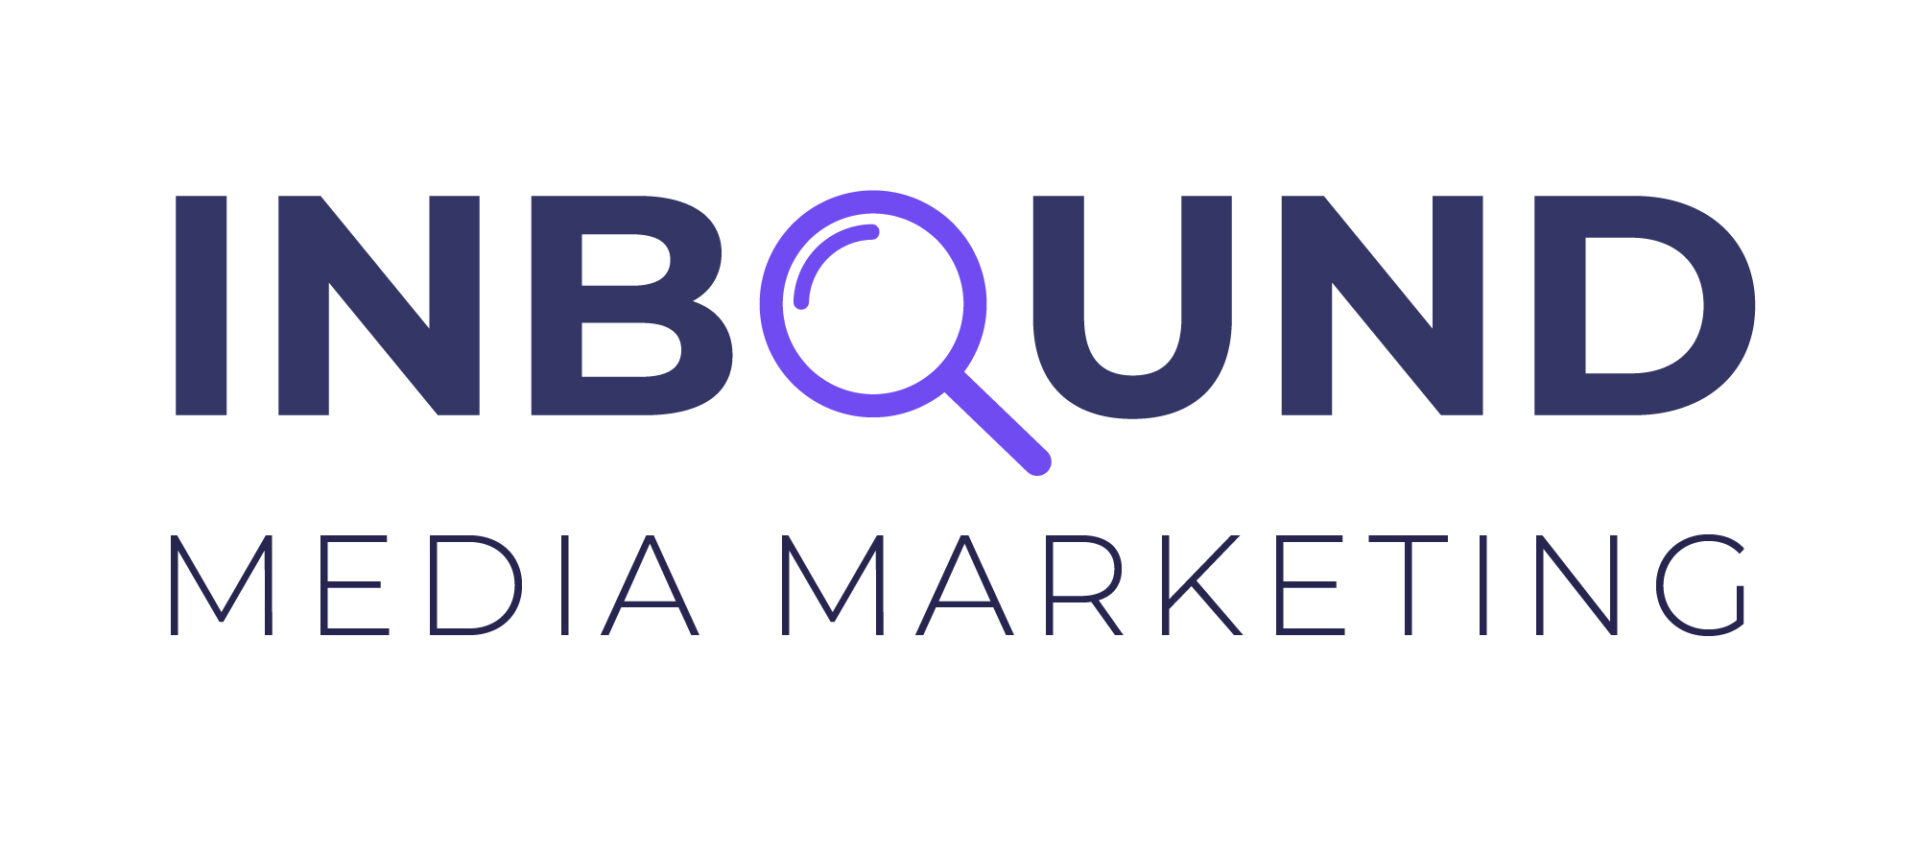 Inbound Media Marketing